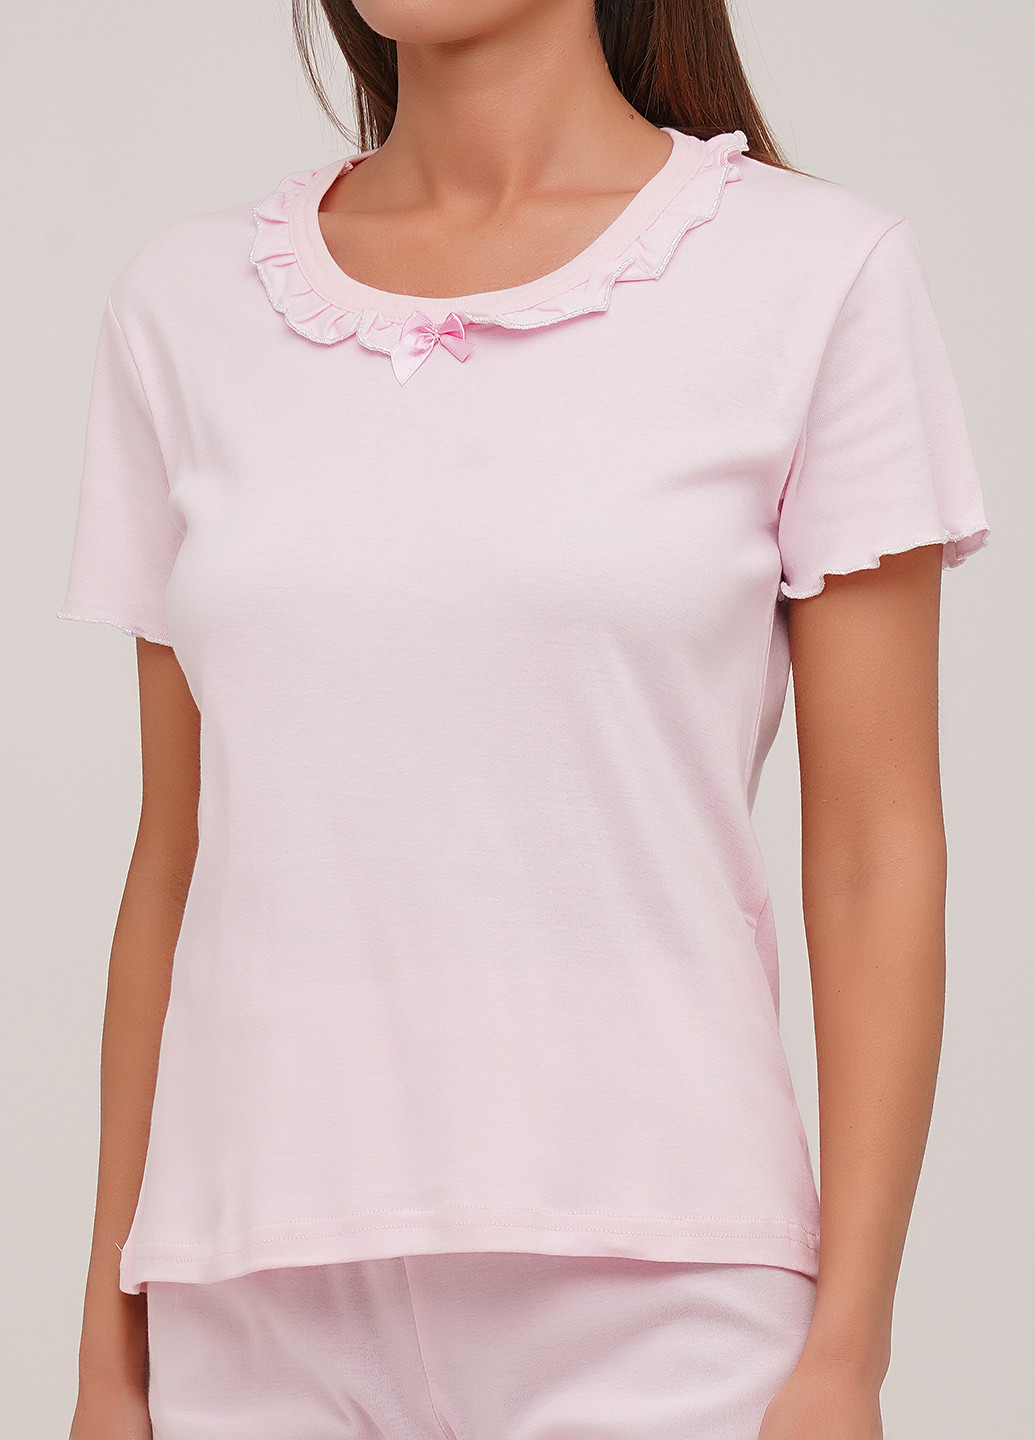 Светло-розовая всесезон пижама (футболка, шорты, маска для сна) футболка + шорты Lucci